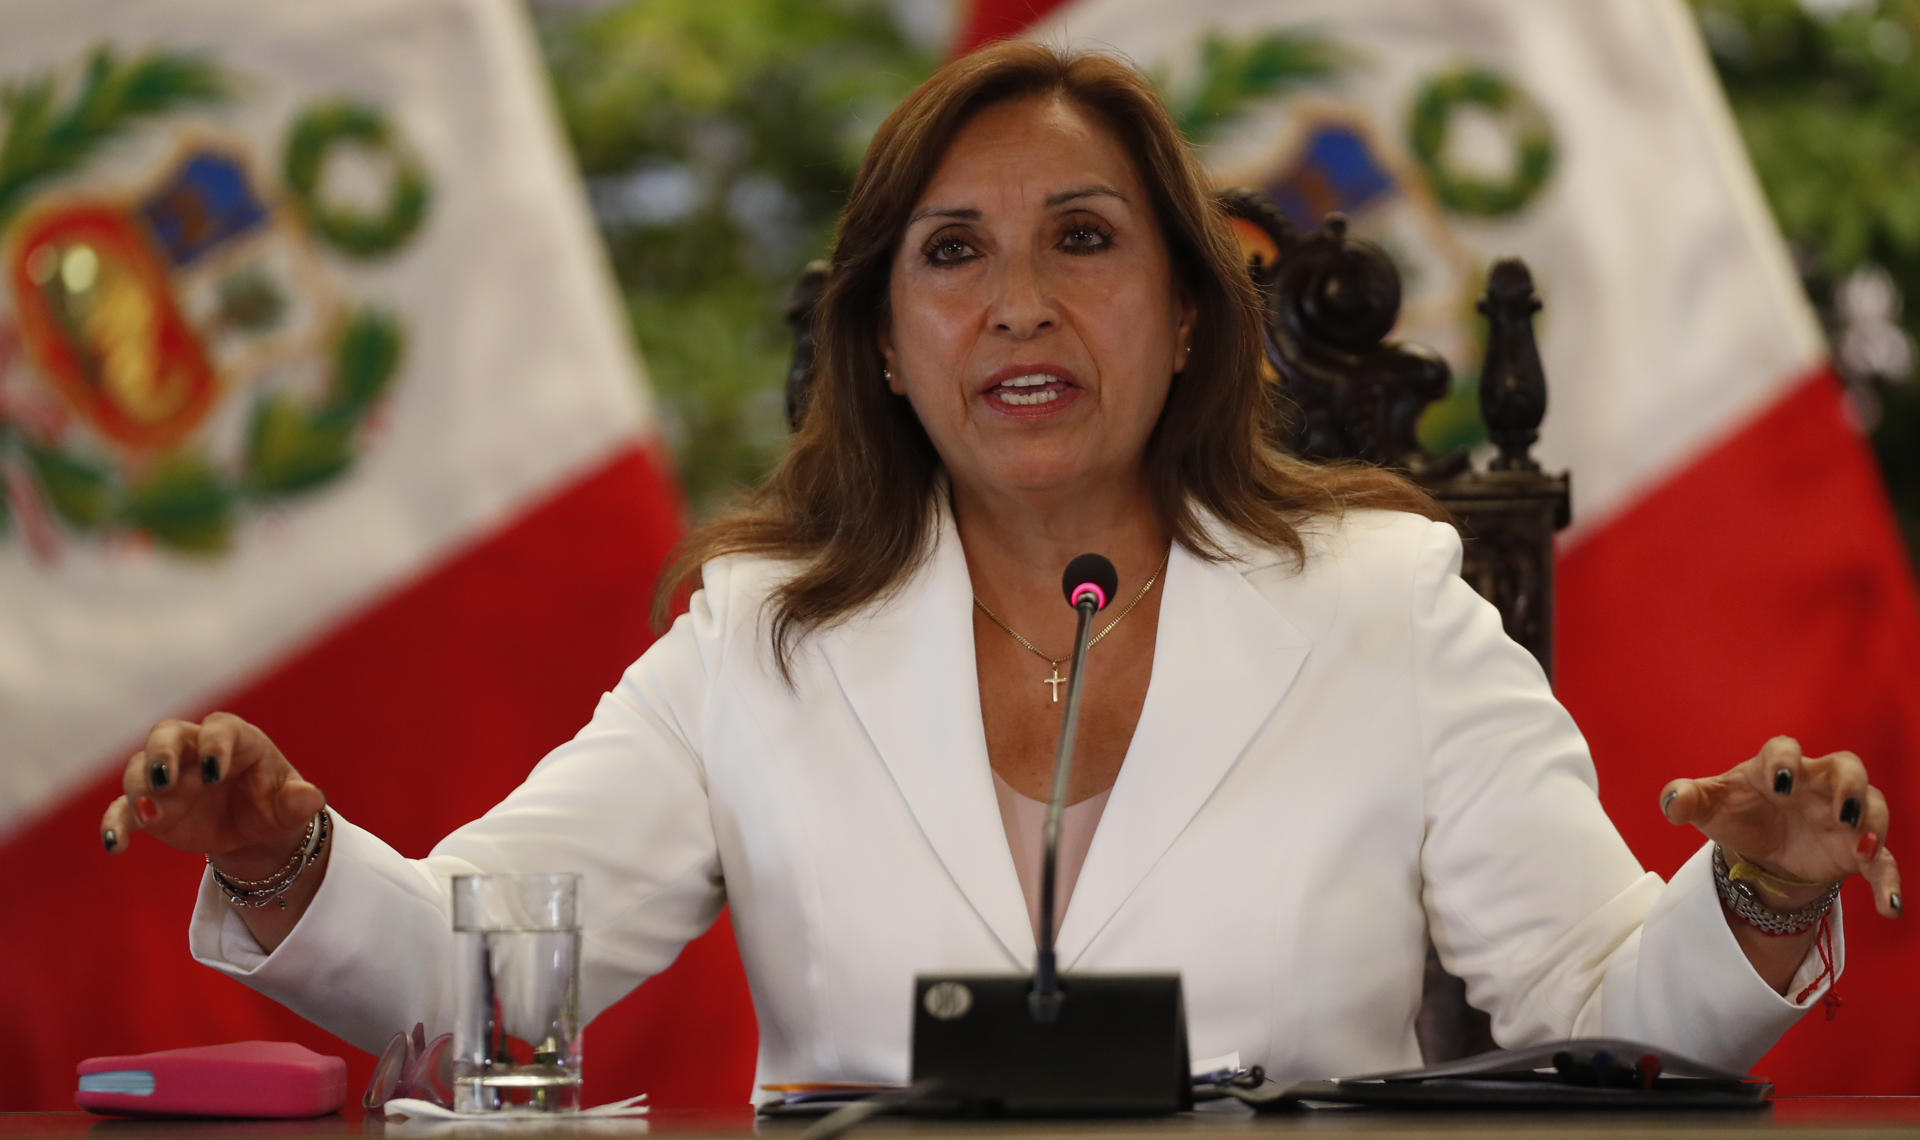 La presidenta de Perú es citada a declarar por la Fiscalía por las muertes en protestas